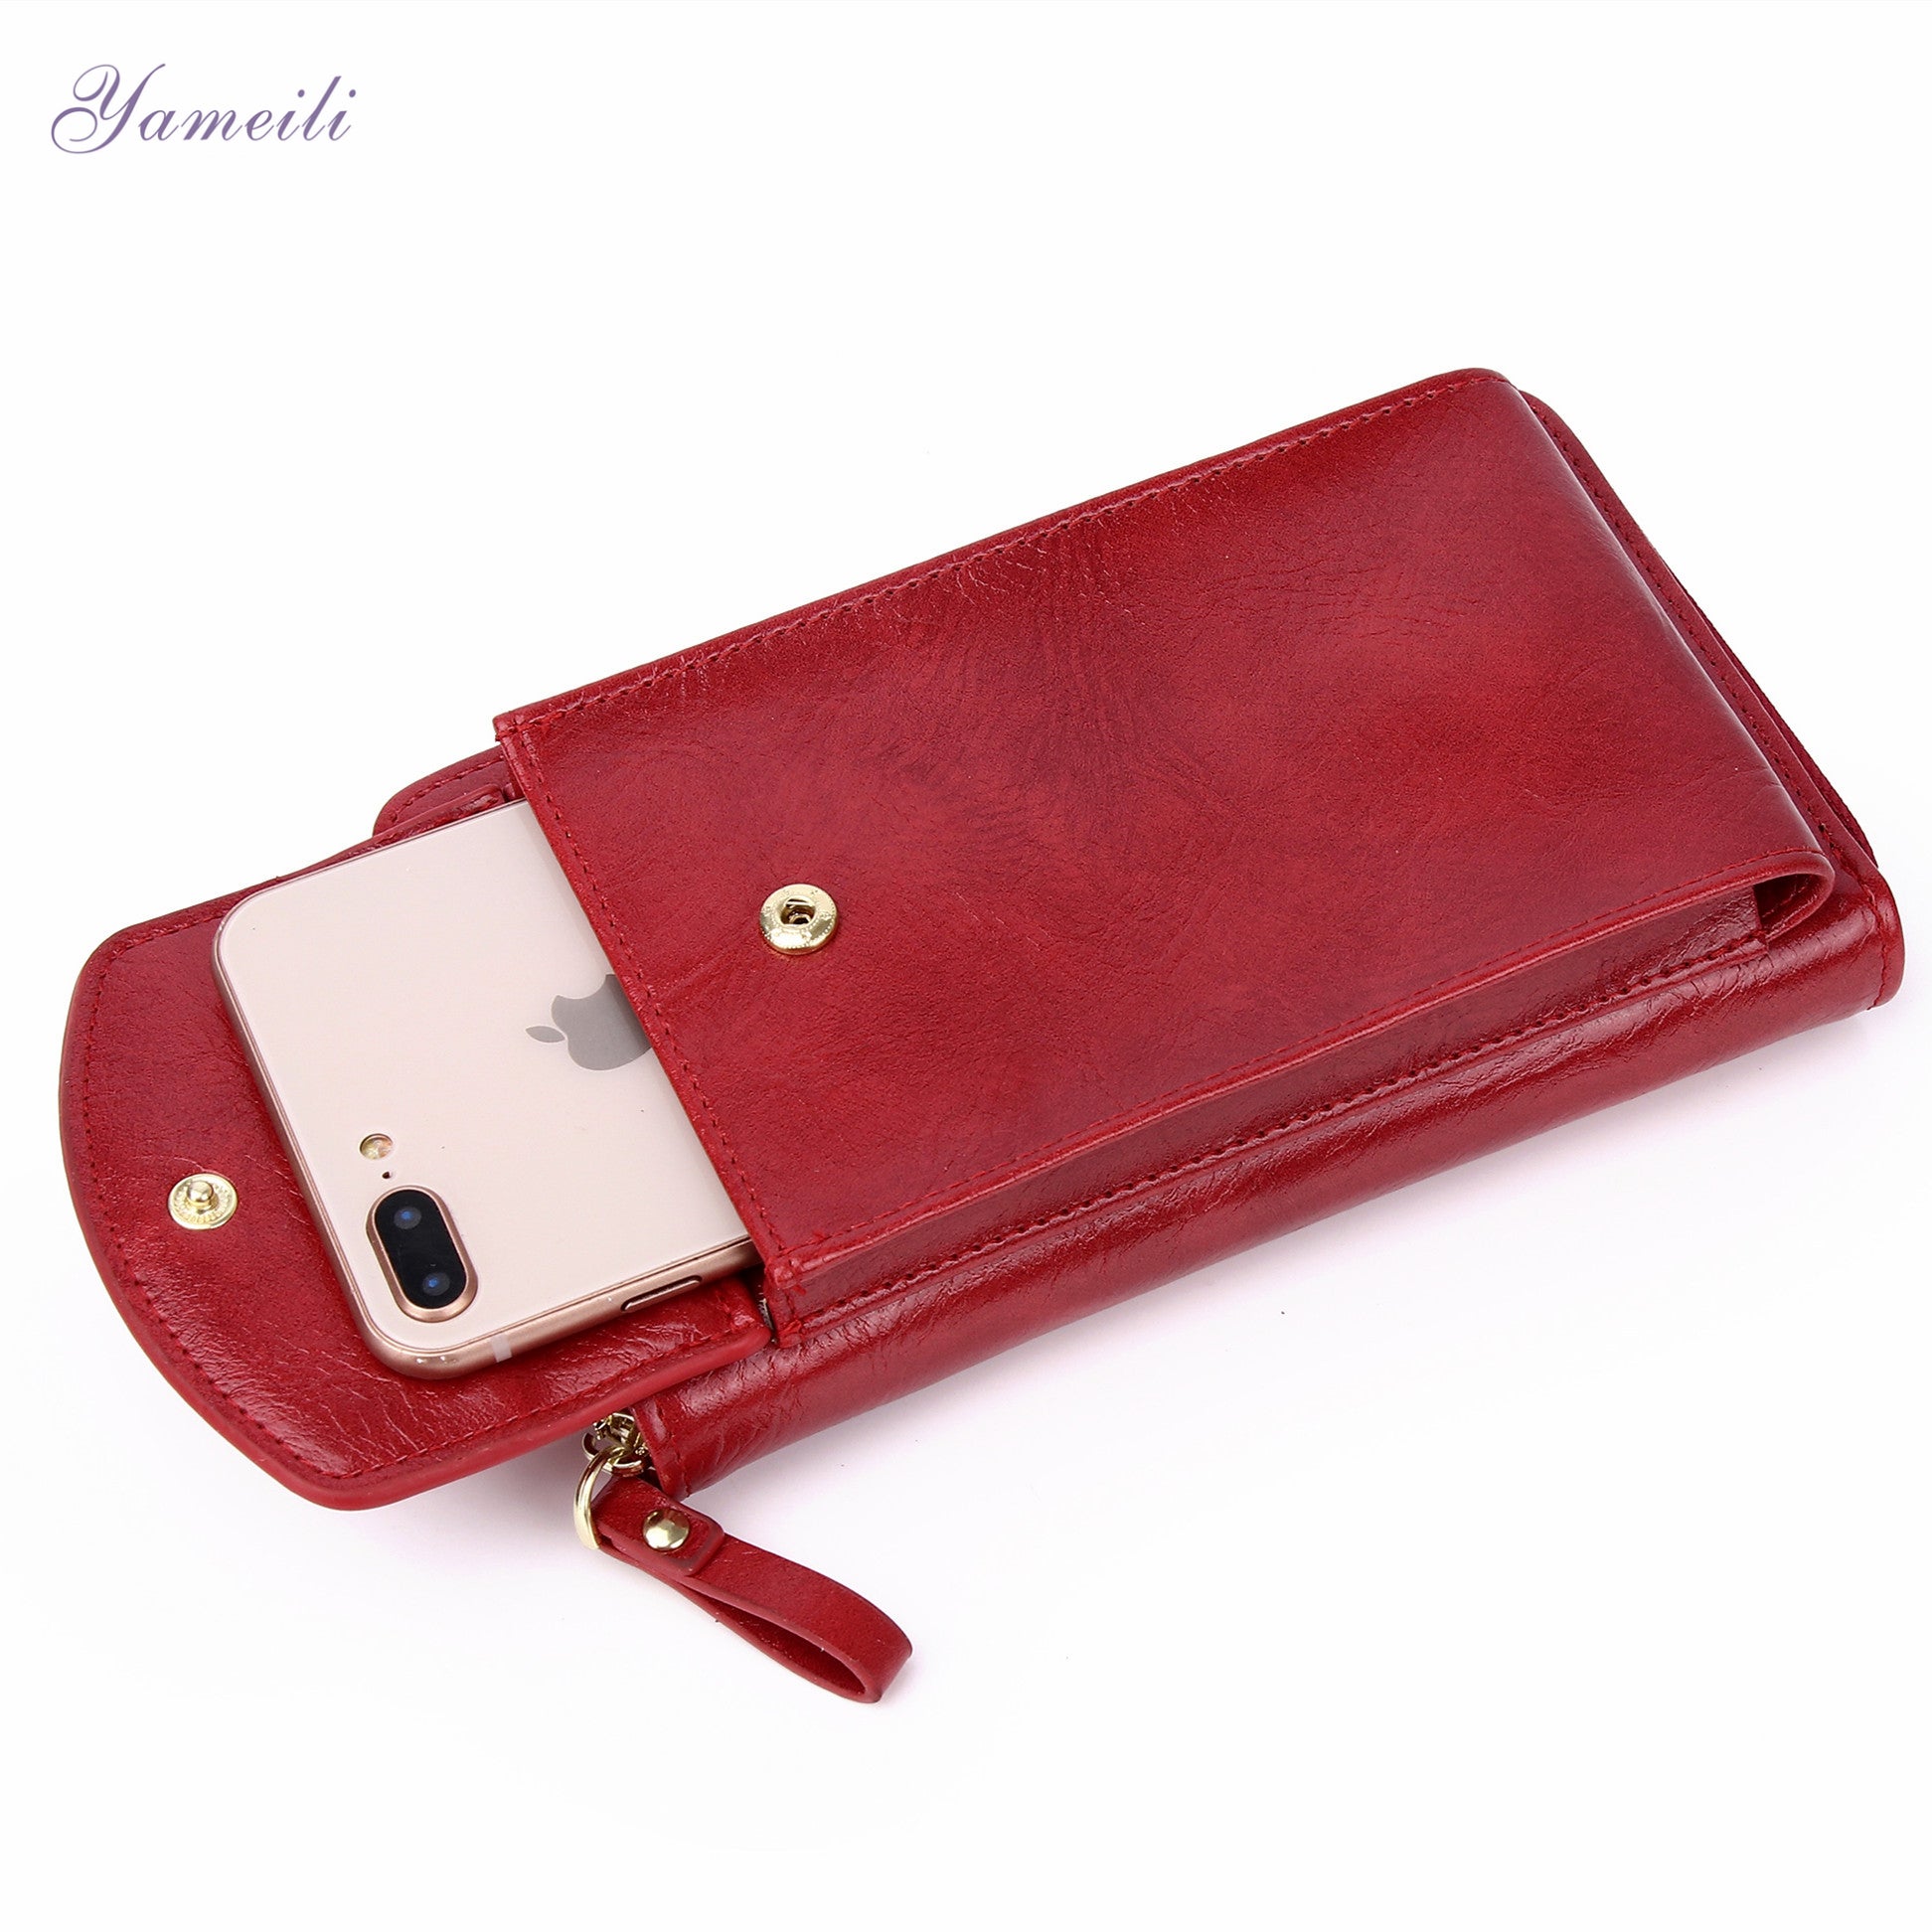 New Vegan leather mobile phone banquet shoulder messenger bag purse handbag multi-card flip